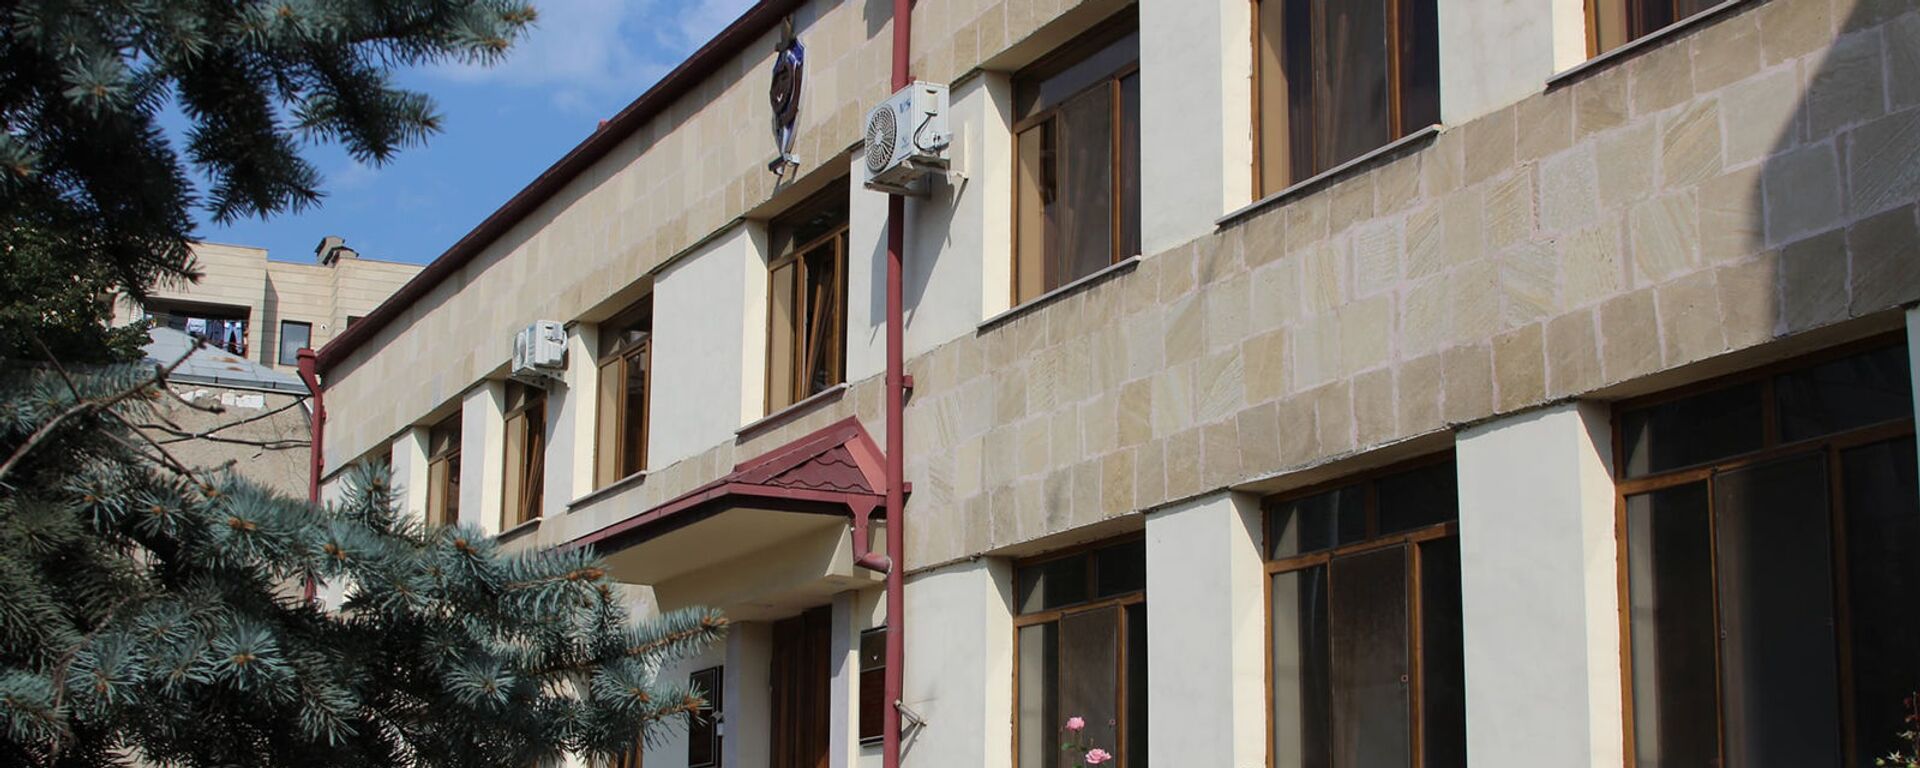 Здание Службы национальной безопасности Карабаха - Sputnik Արմենիա, 1920, 30.06.2021